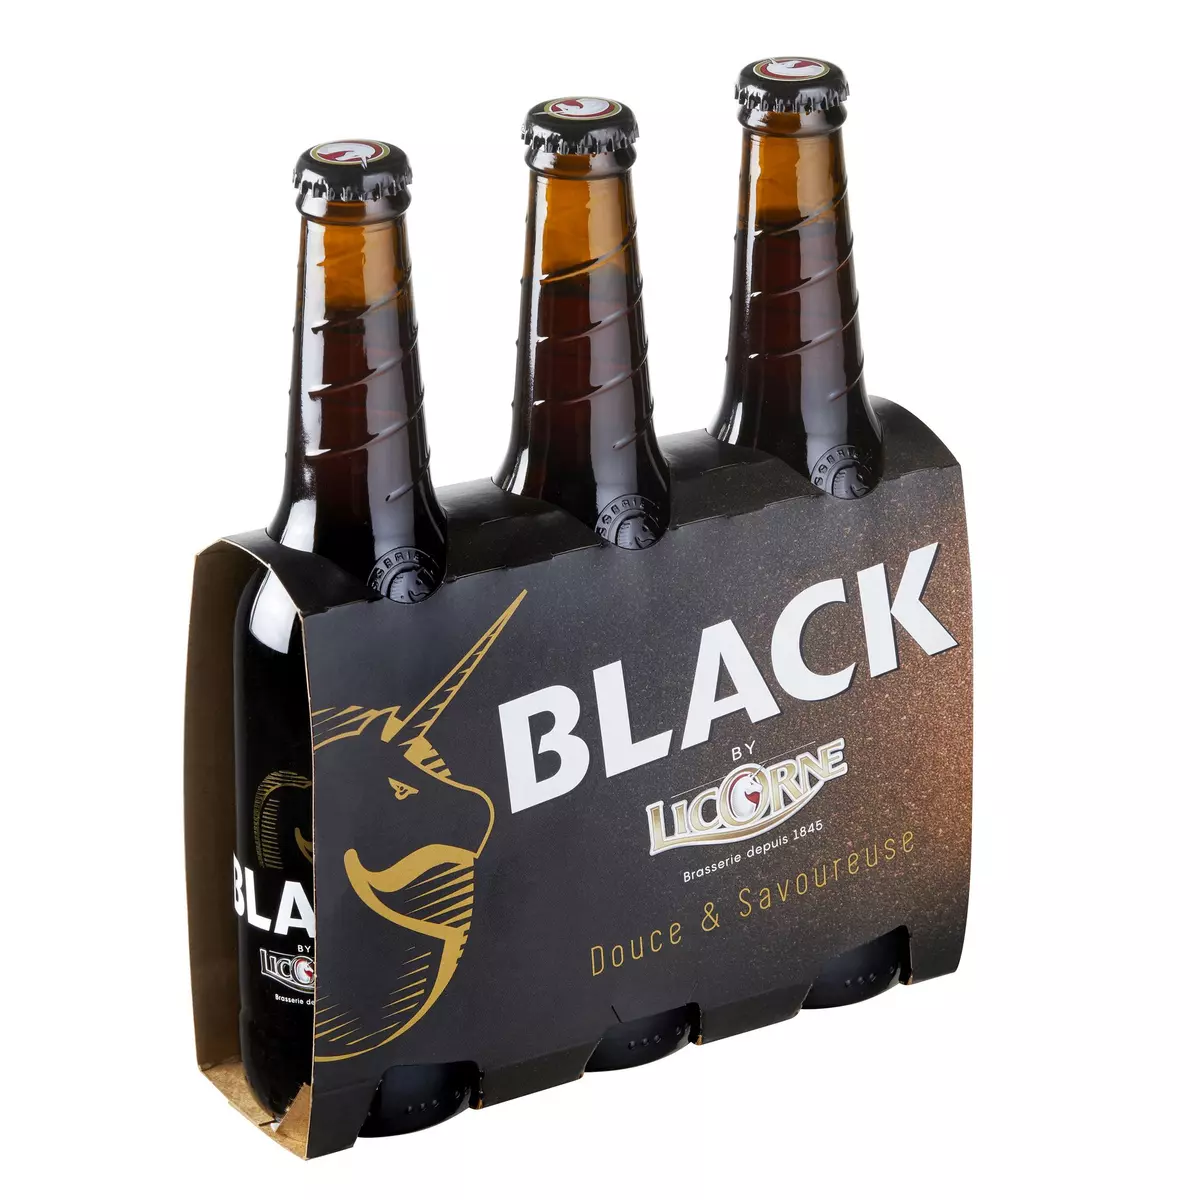 LICORNE Bière black 6% bouteilles 3x33cl